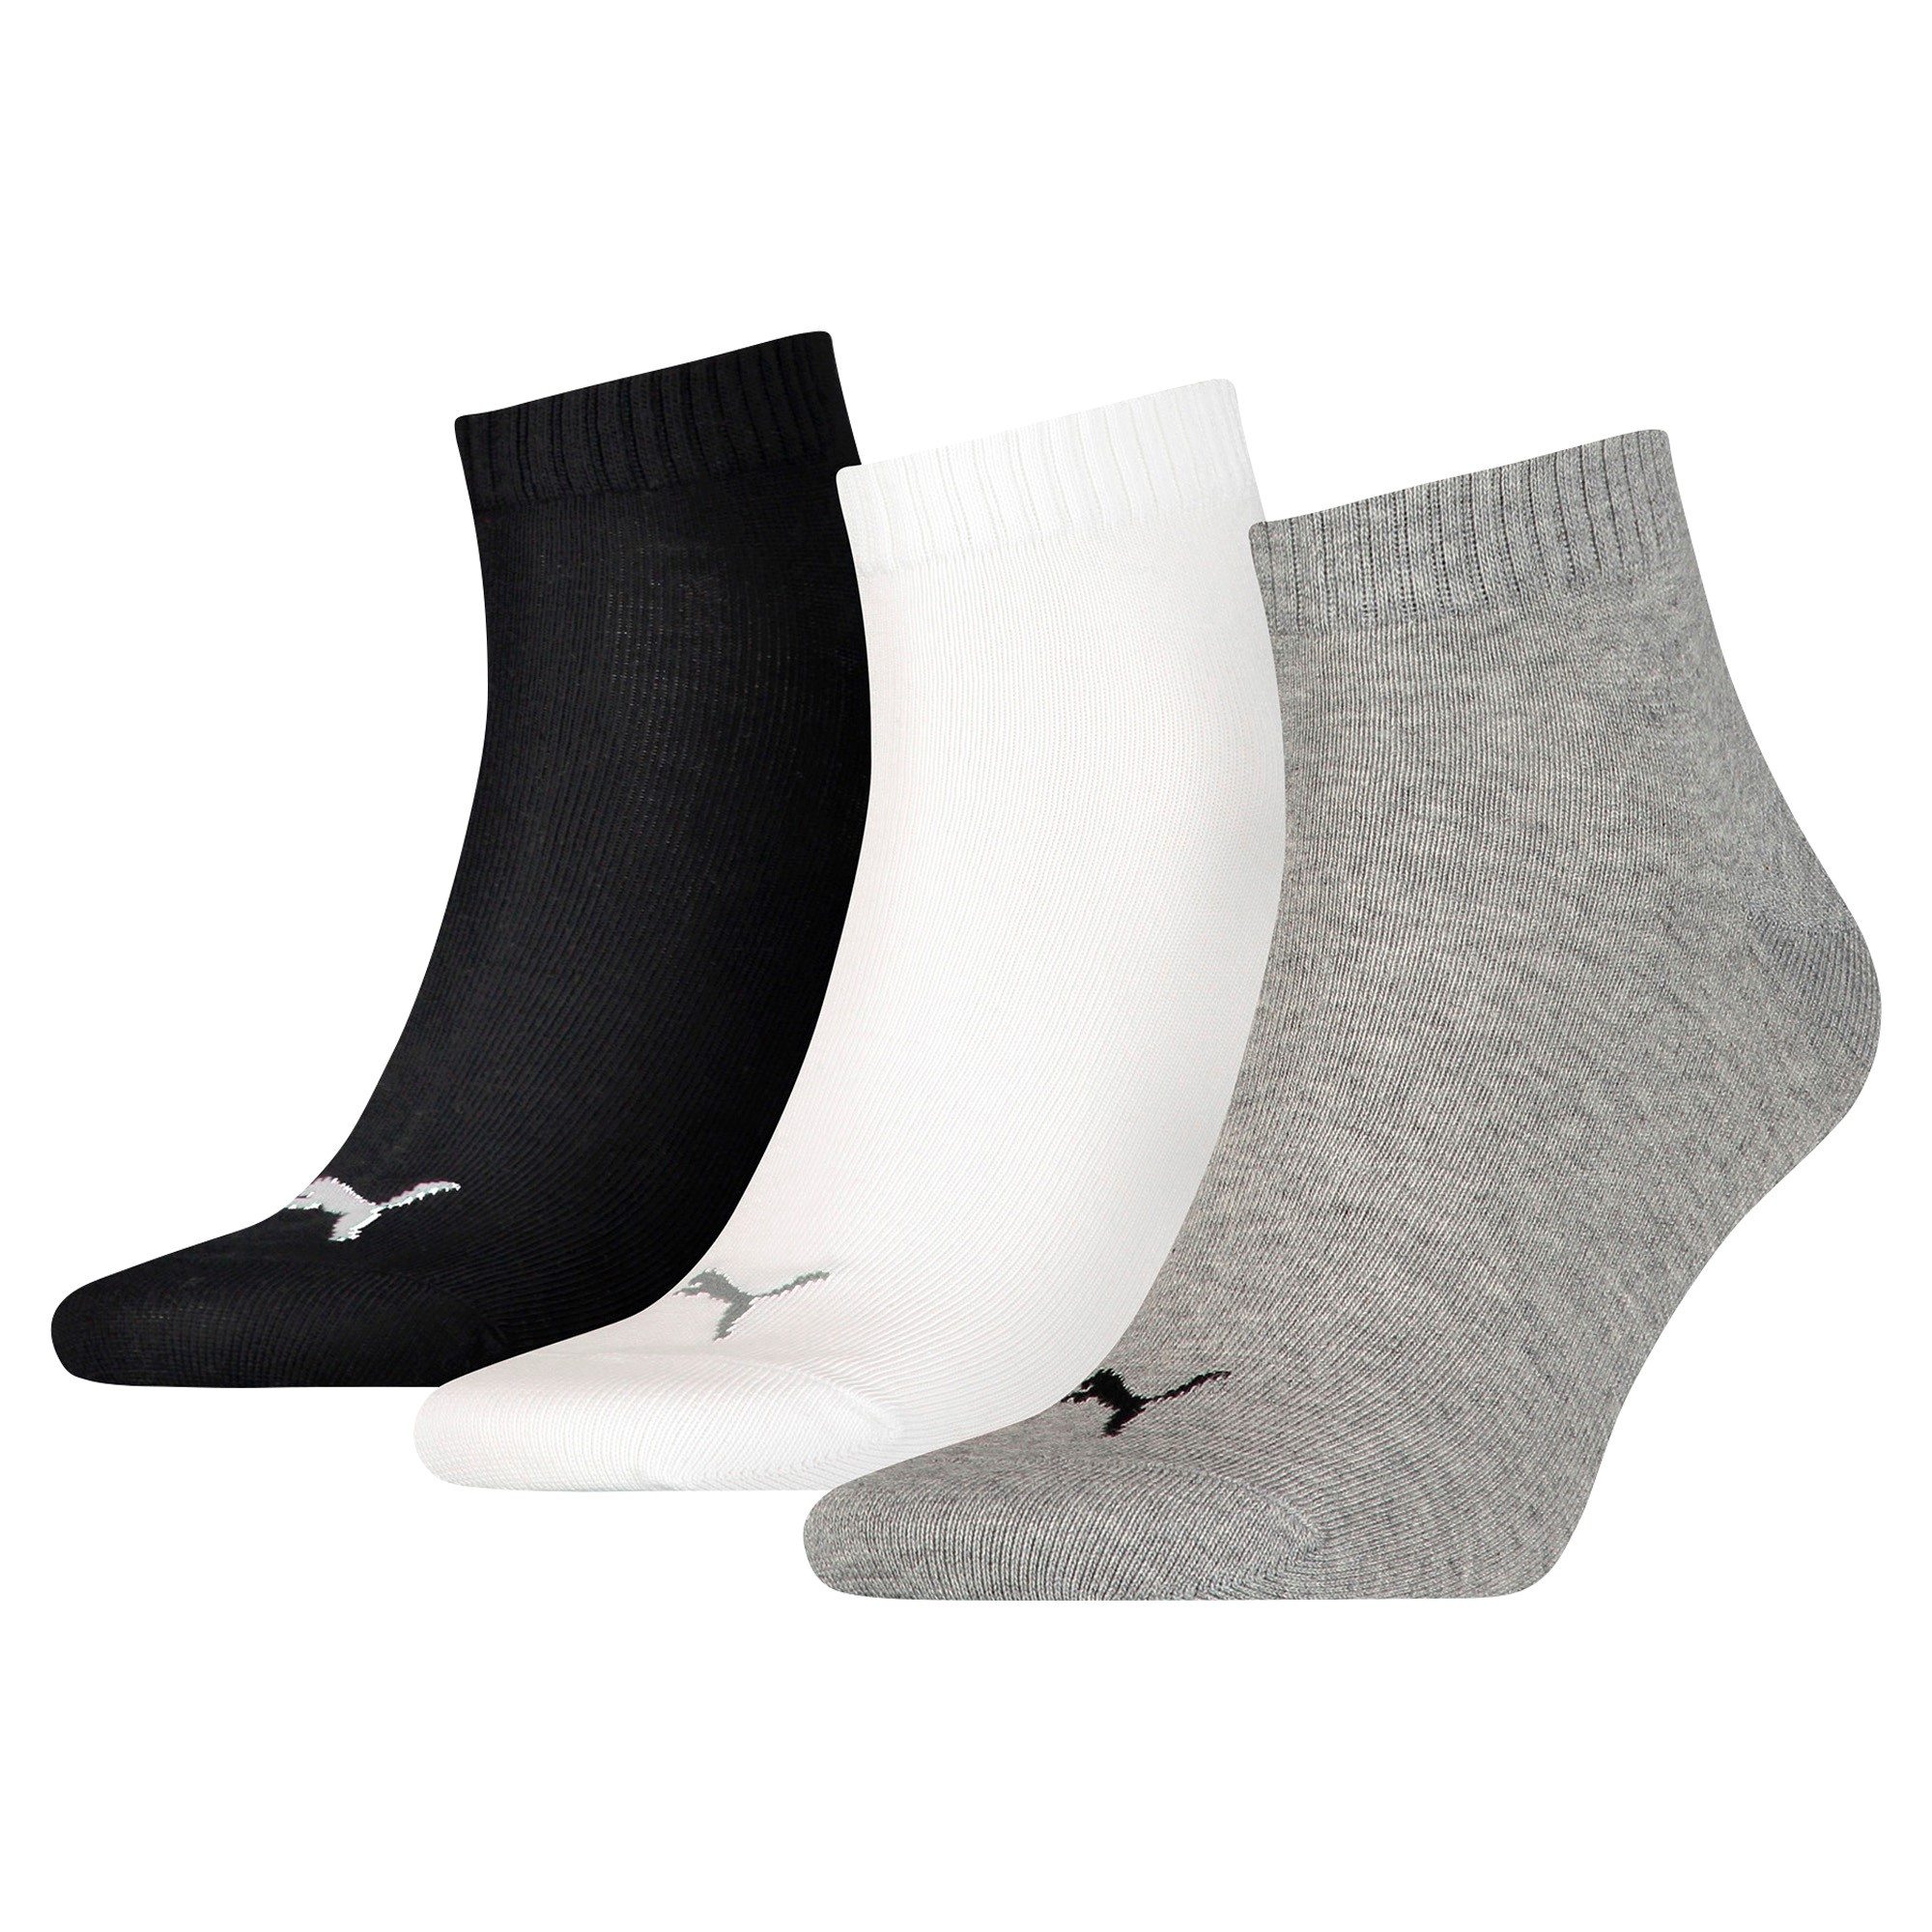 Комплект носков унисекс PUMA UNISEX QUARTER AIN 3P grey серый, белый, черный 35-38